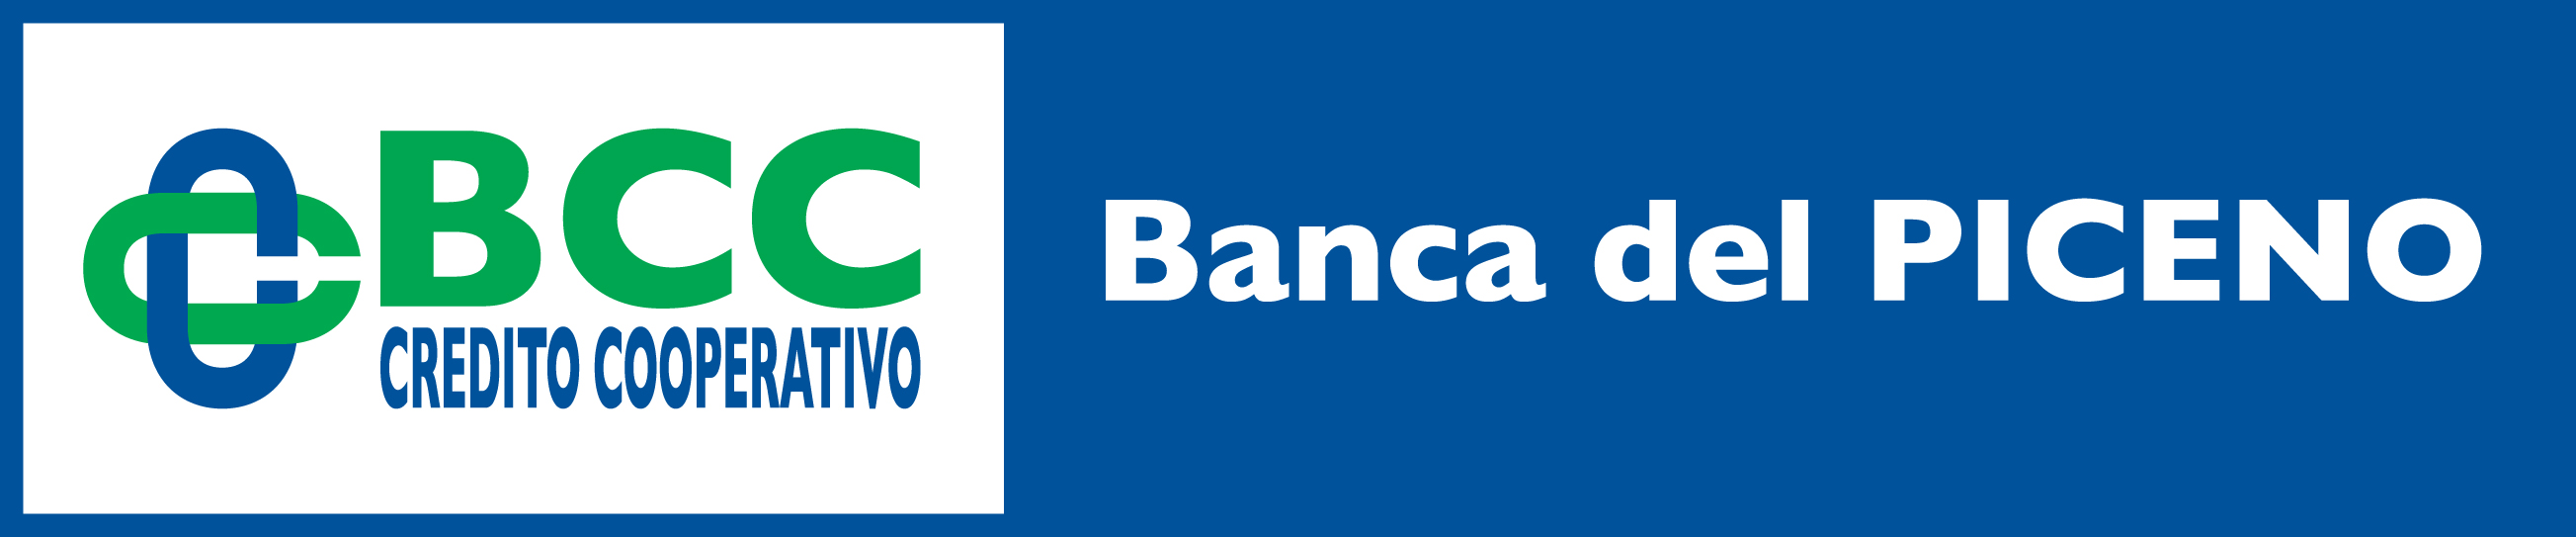 BCC_Banca_del_Piceno